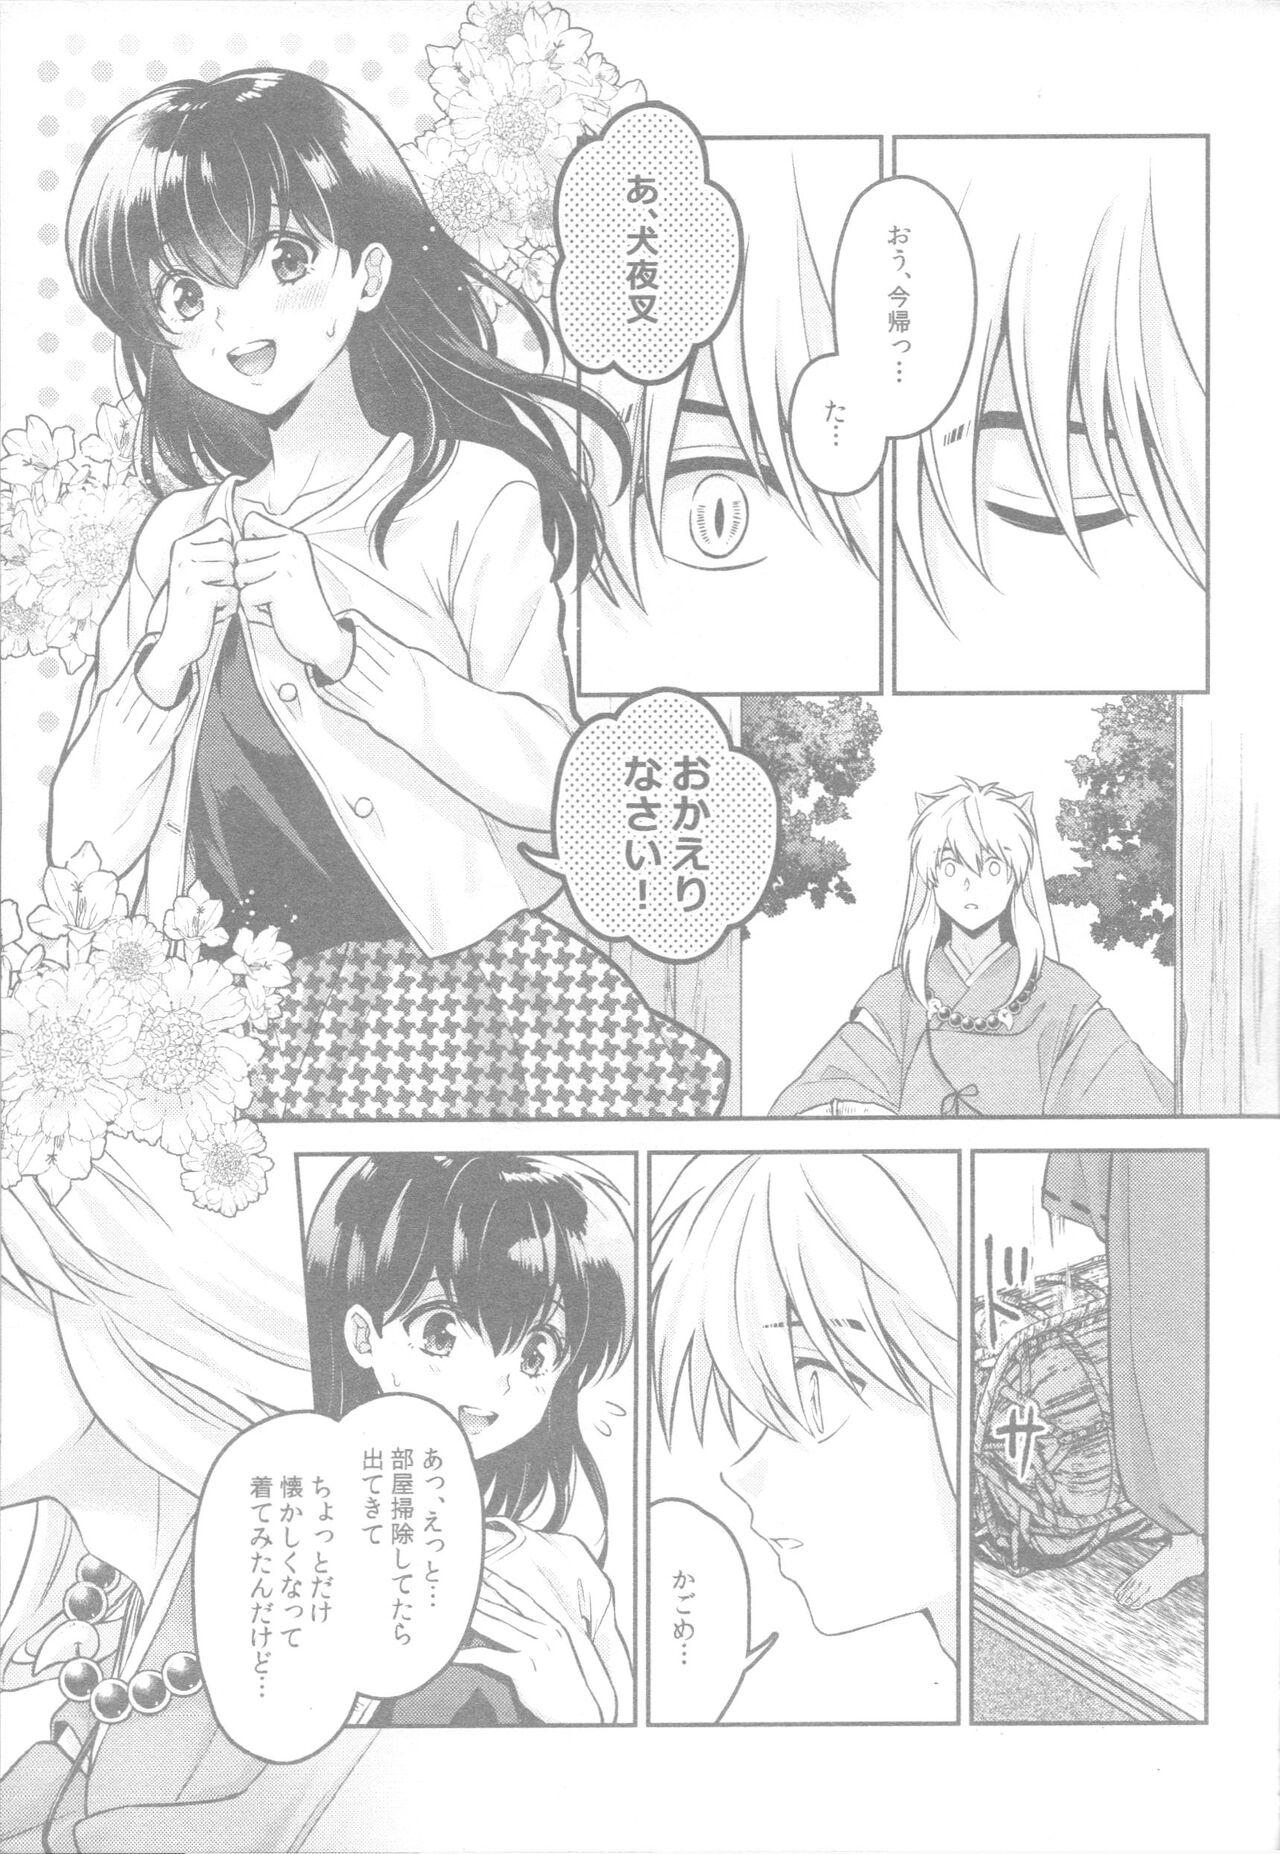 Bulge Soshite Mainichi ga Tsuzuite iku - Inuyasha Str8 - Page 10